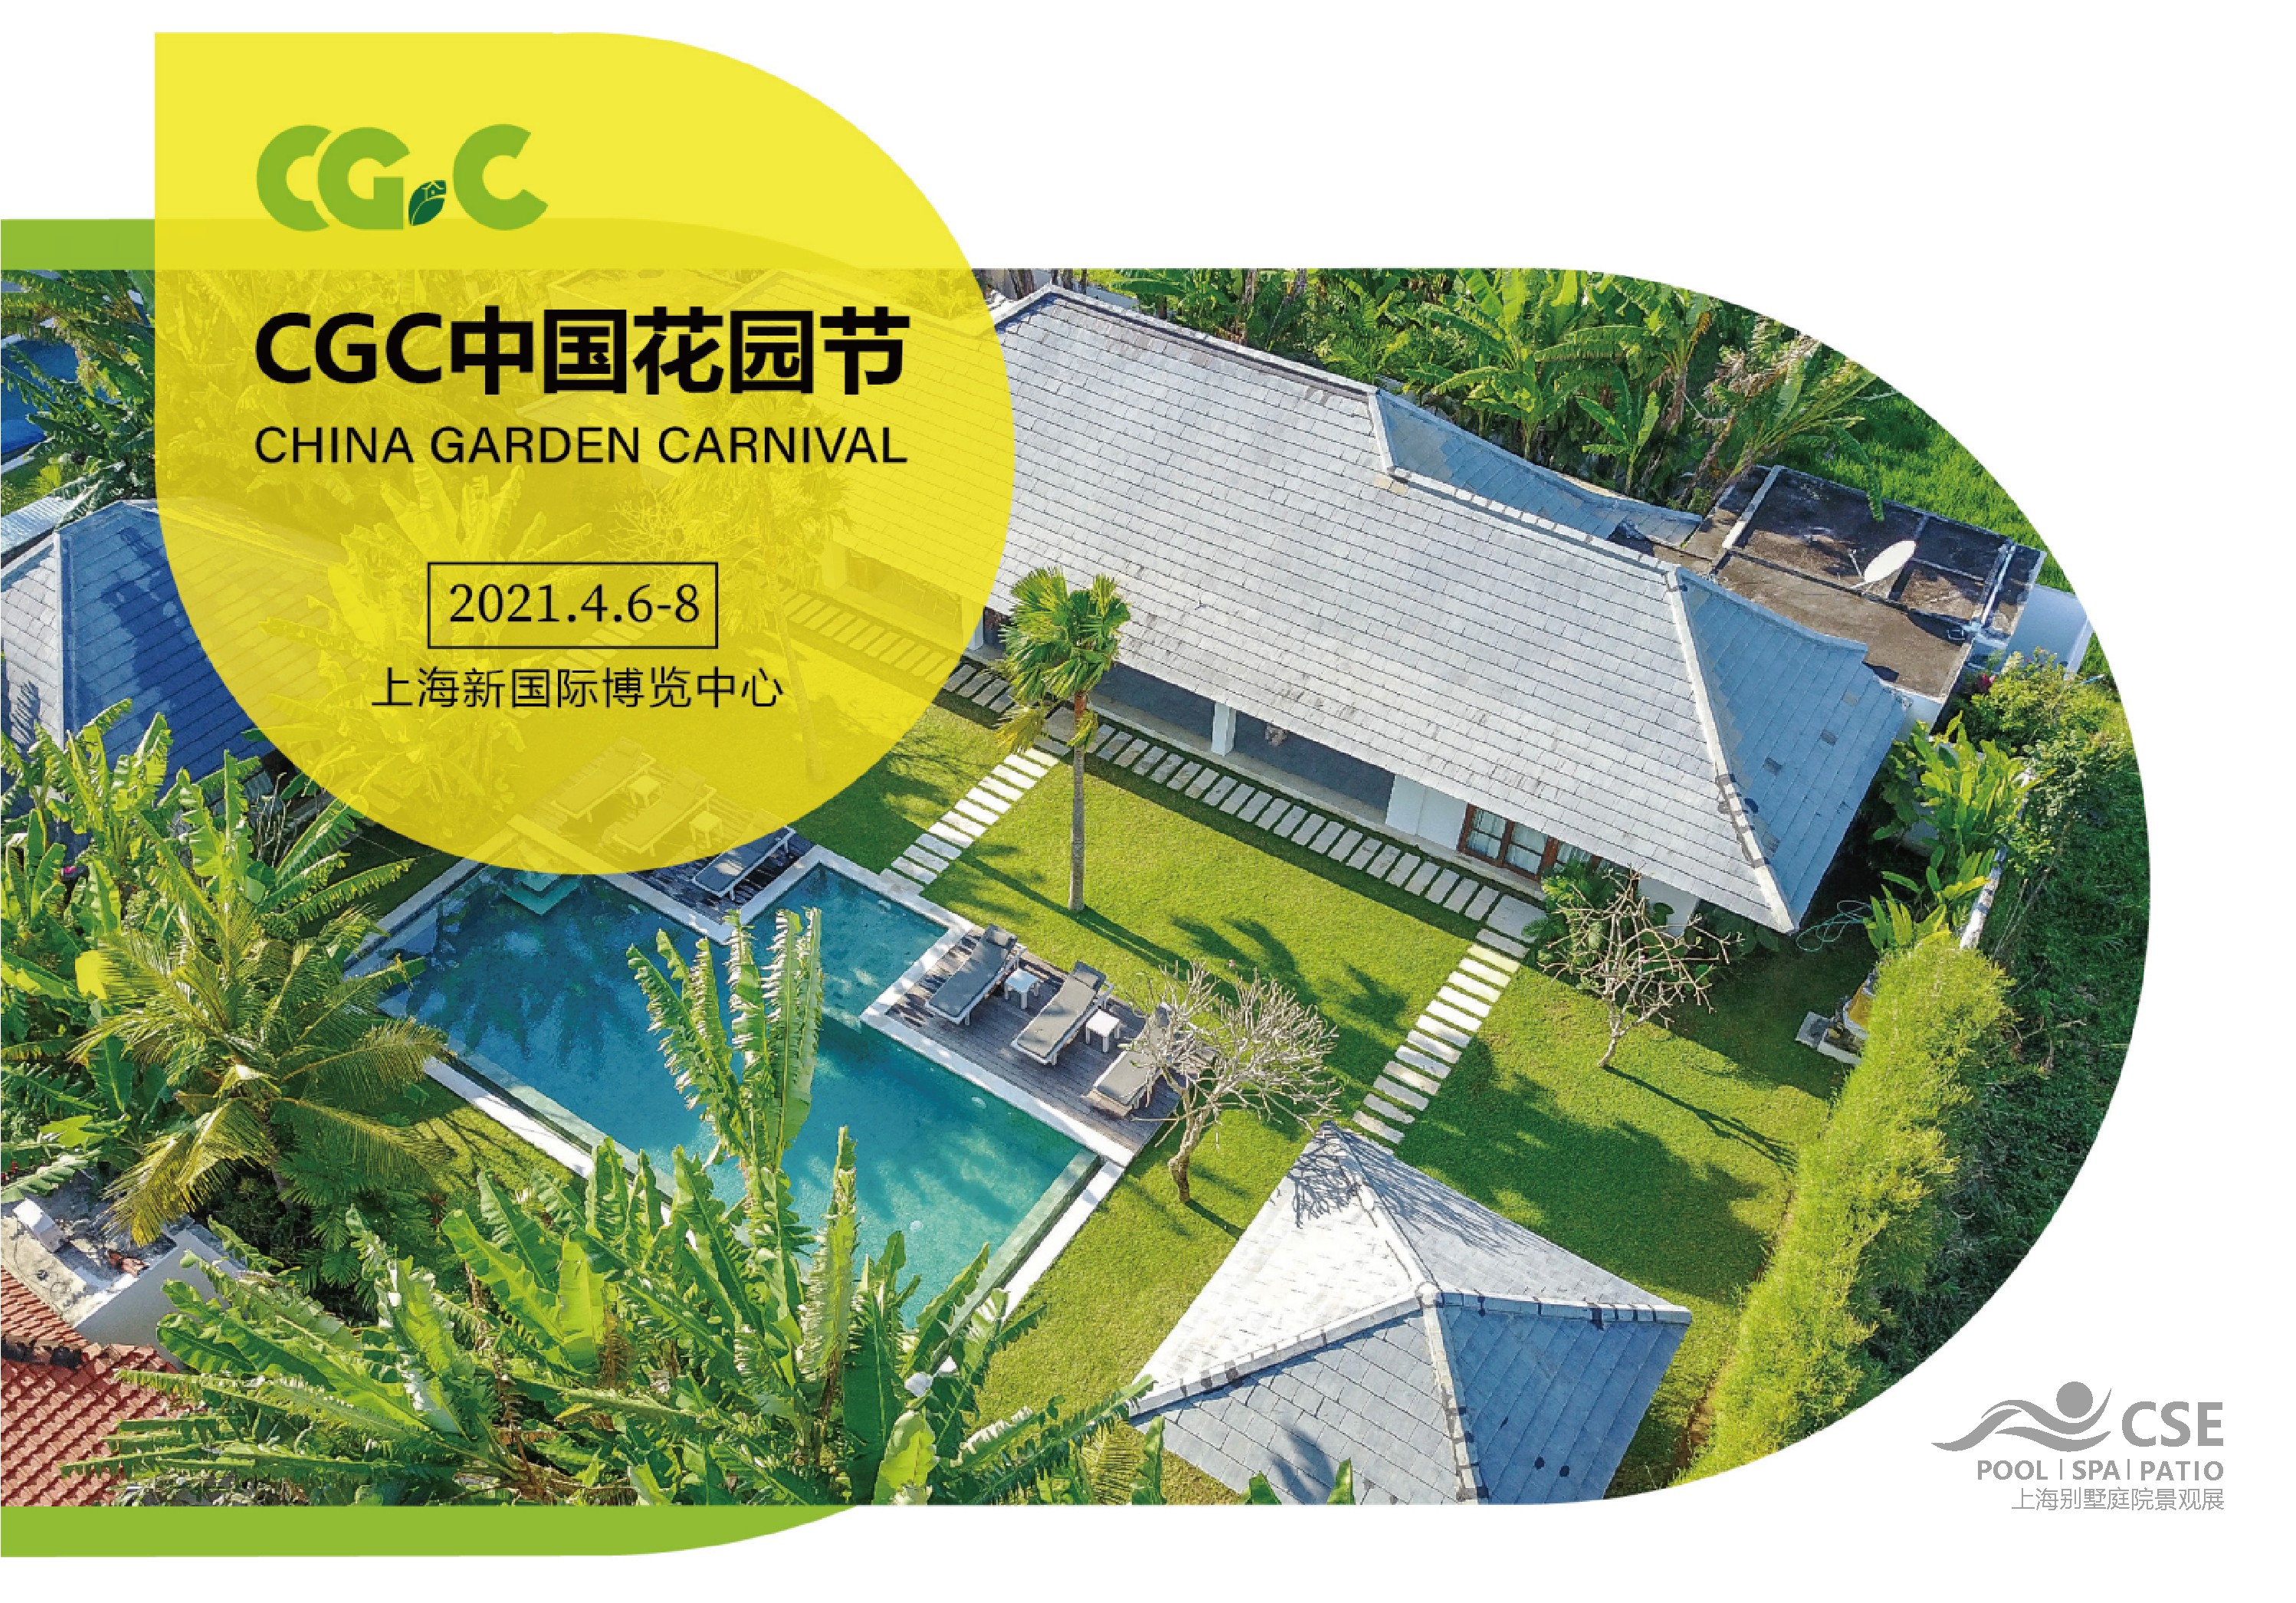 “网红”新景看不停CGC中国花园节开启庭院景观设计新时代!